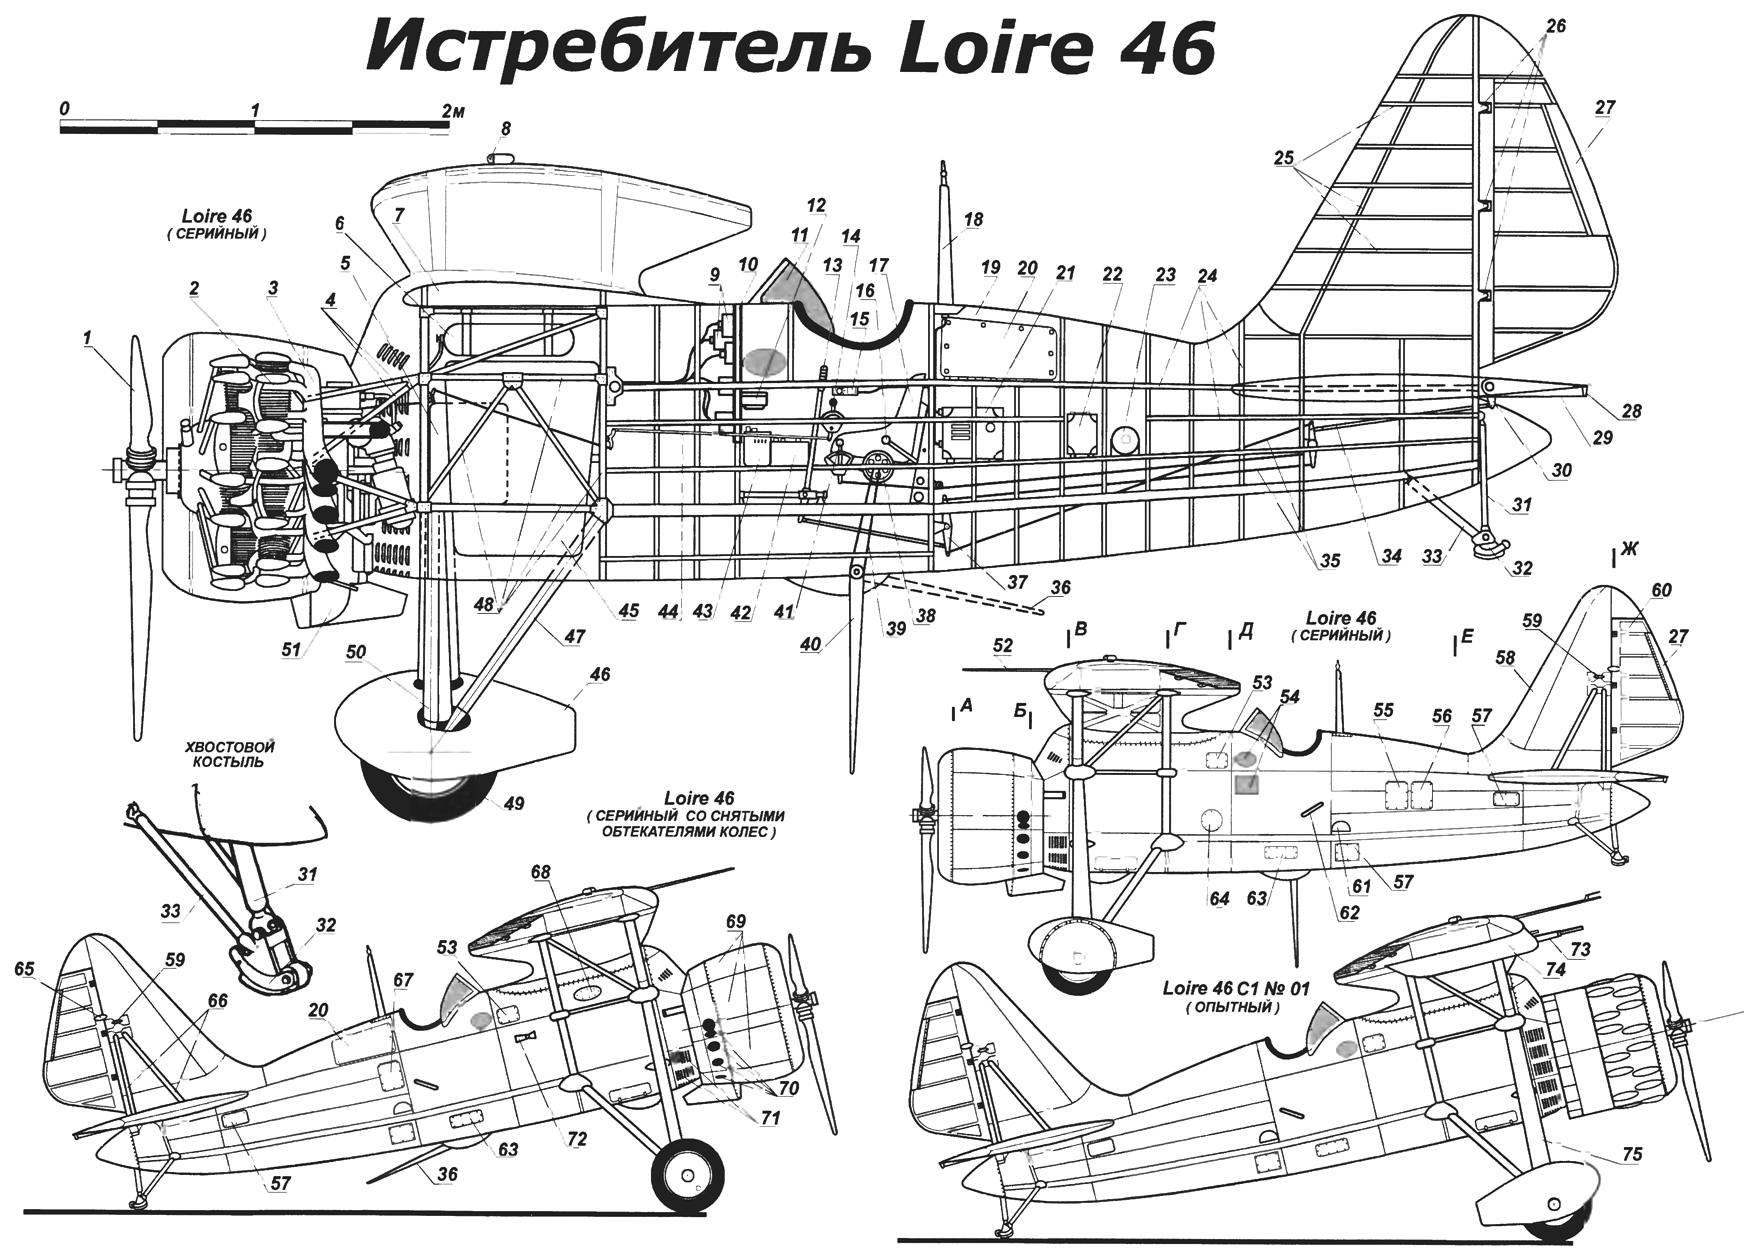 Strut-braced single-seat fighter-monoplane Loire 46